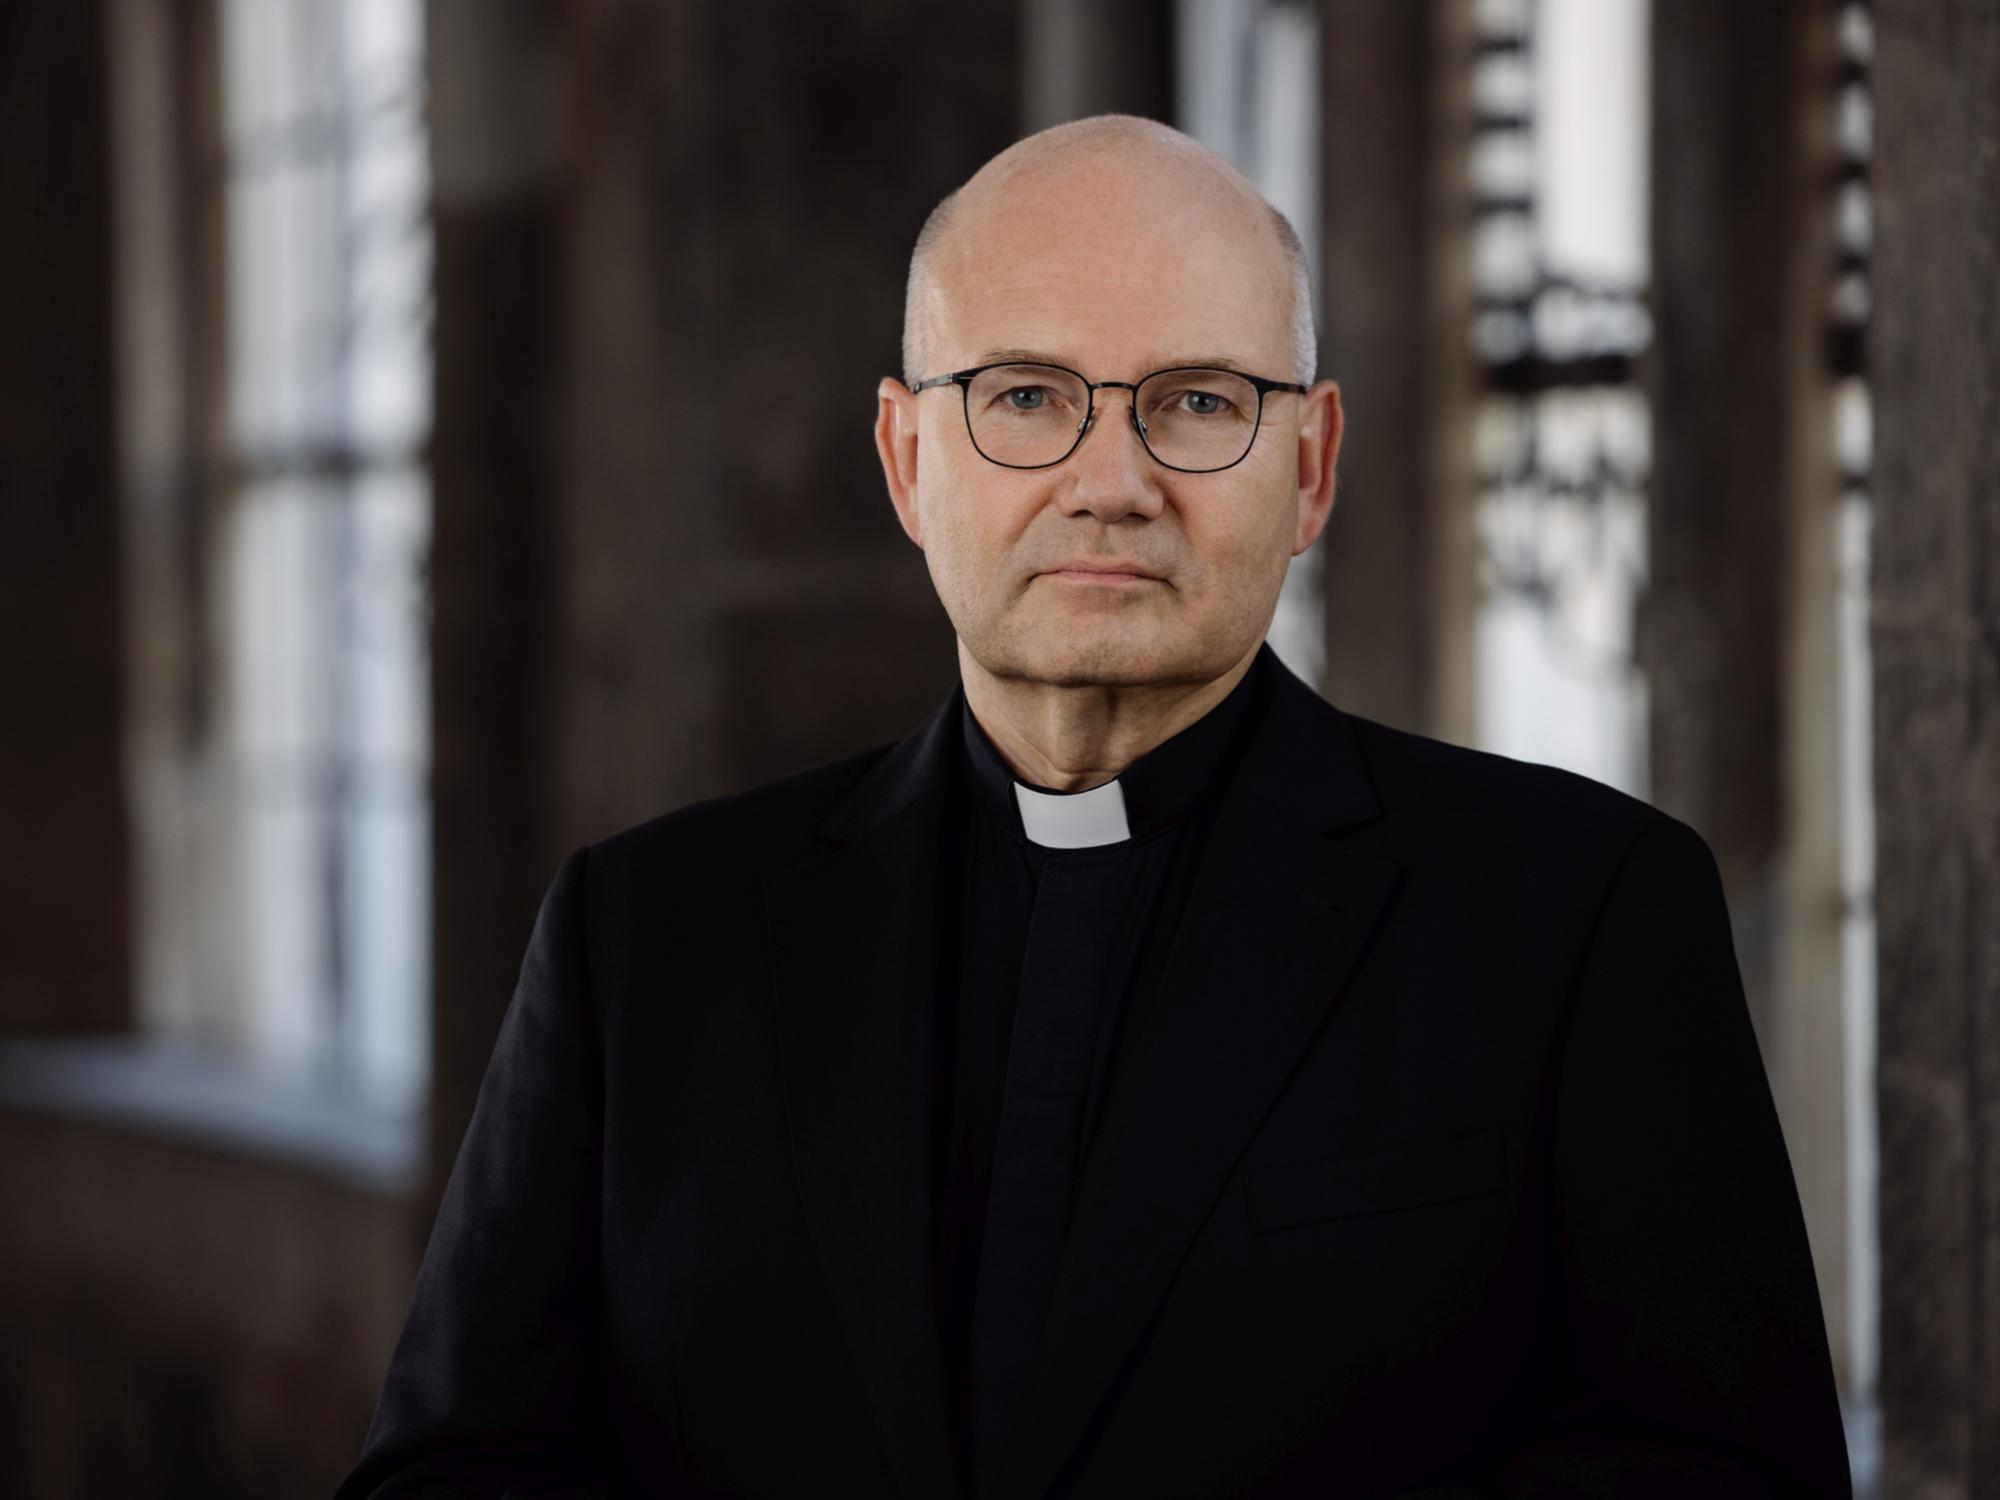 Radikale Ideen müssen entlarvt werden (c) Bistum Aachen/Martin Braun